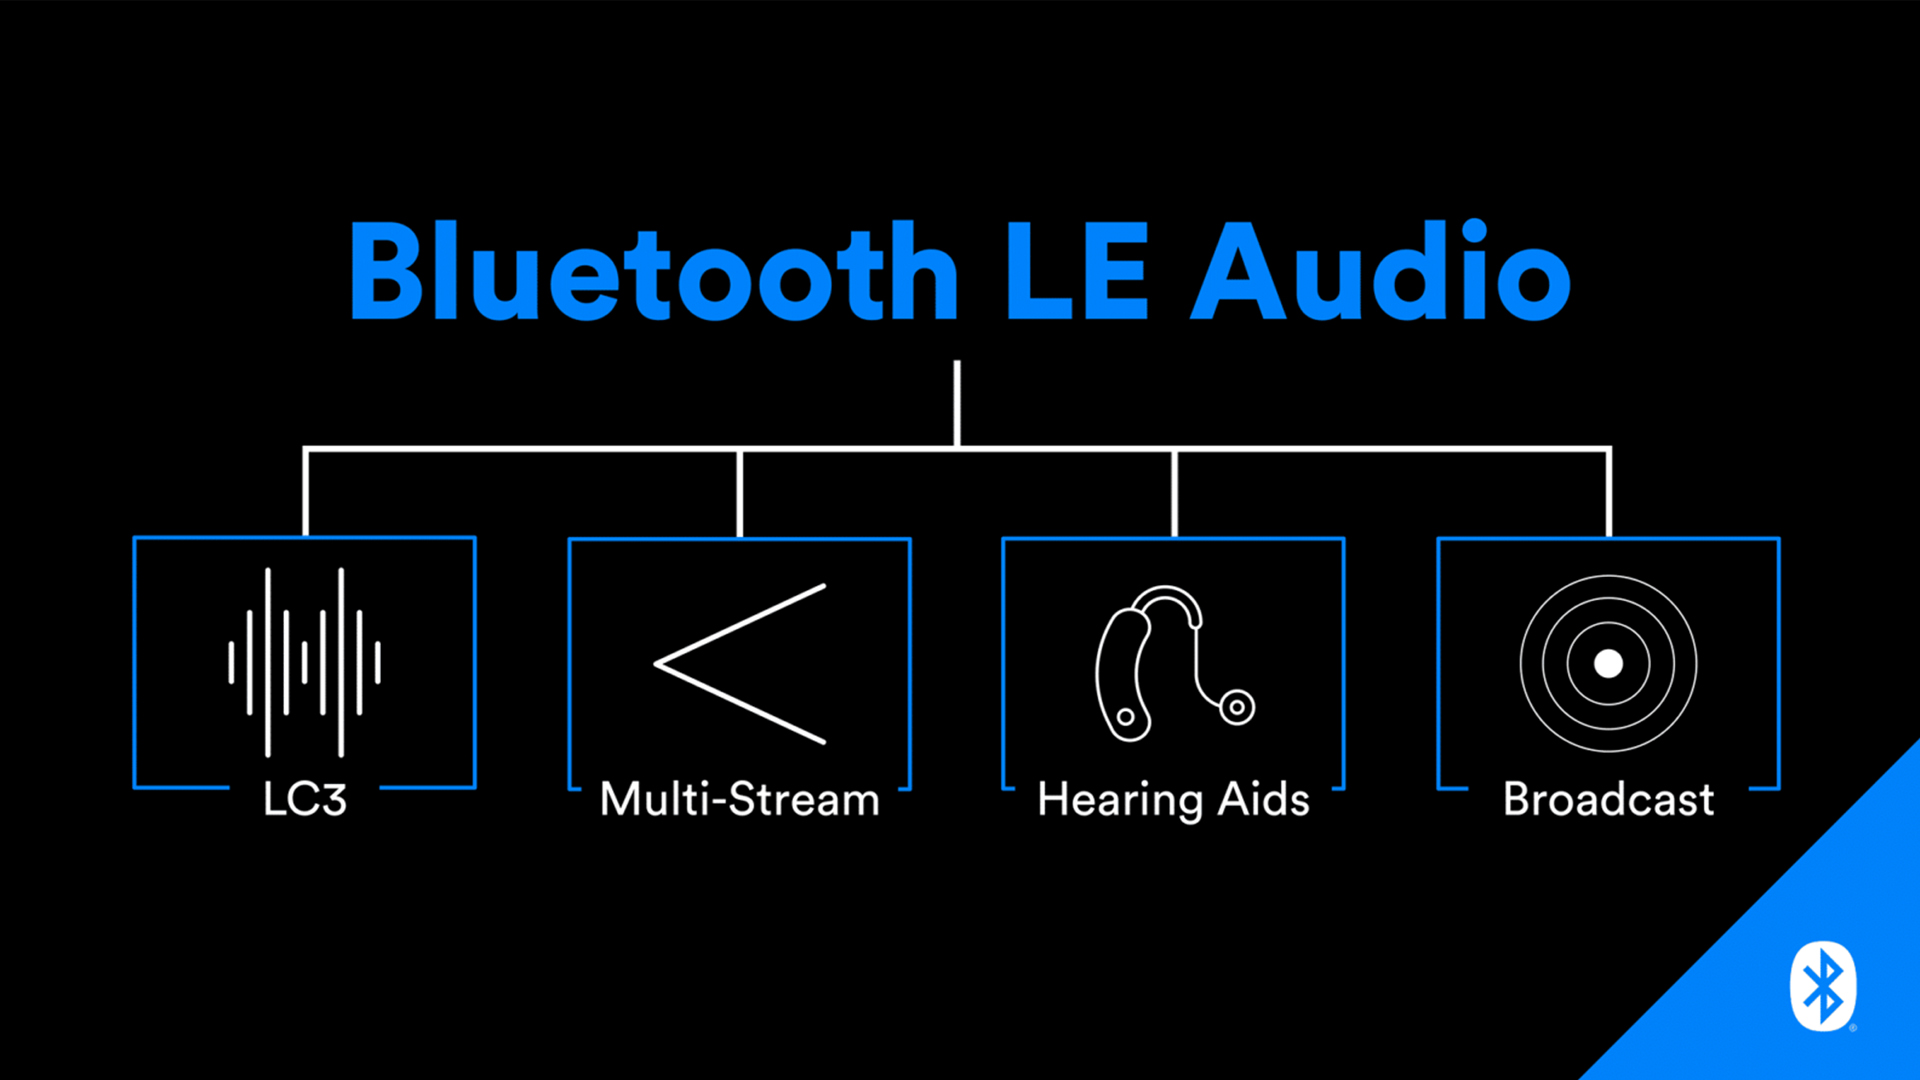 Die neuen Features von Audio LE: der LC3-Codec, die synchrone Übertragung mehrerer Signale (Multi-Stream), die Hörgeräte-Unterstützung und der "Broadcast"-Modus.